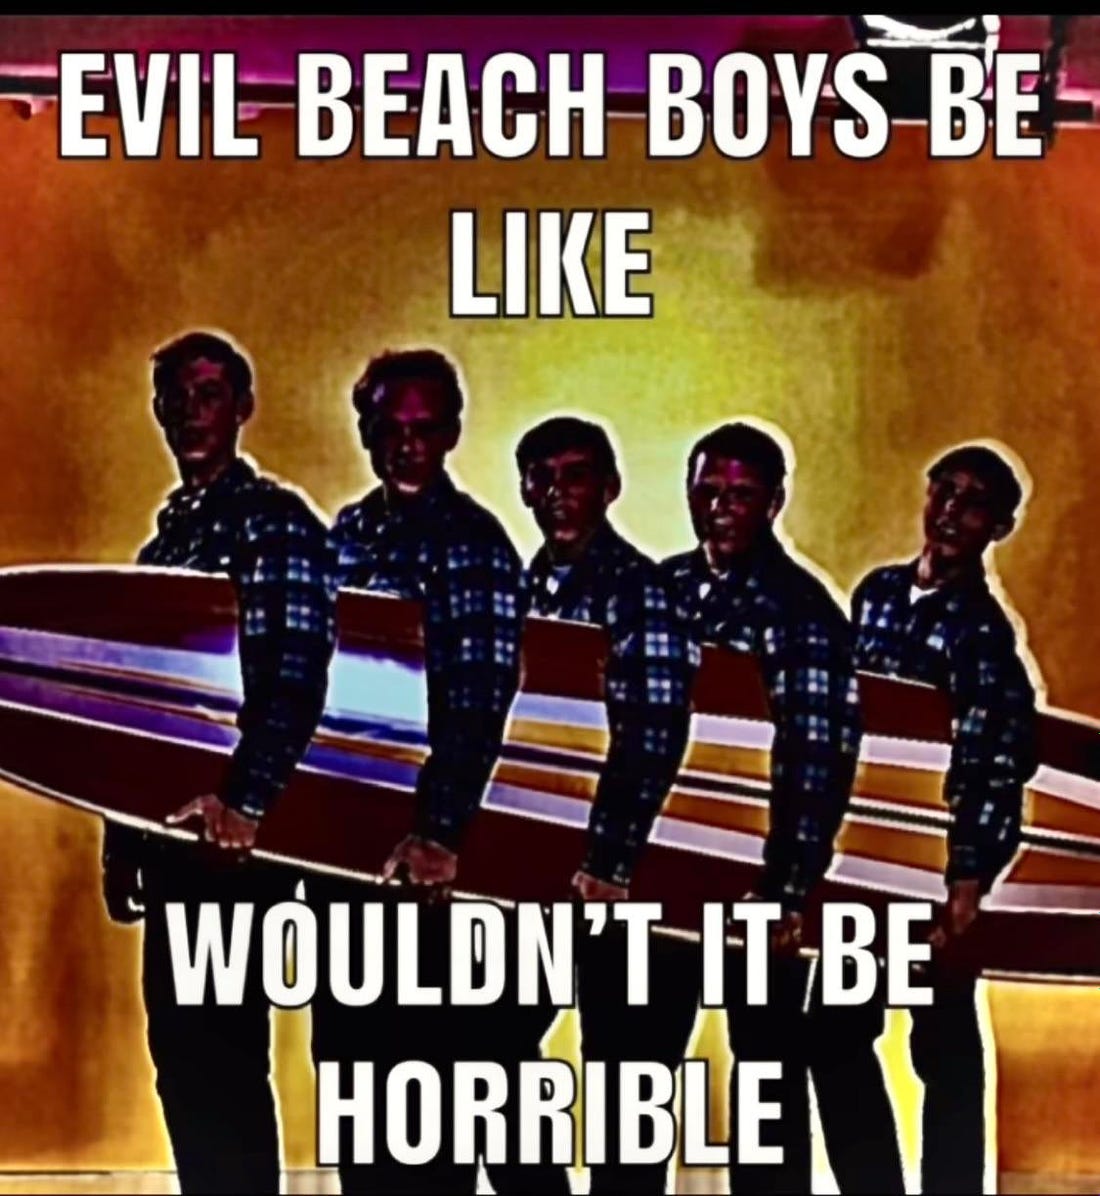 Evil beach boys: beachboyscirclejerk